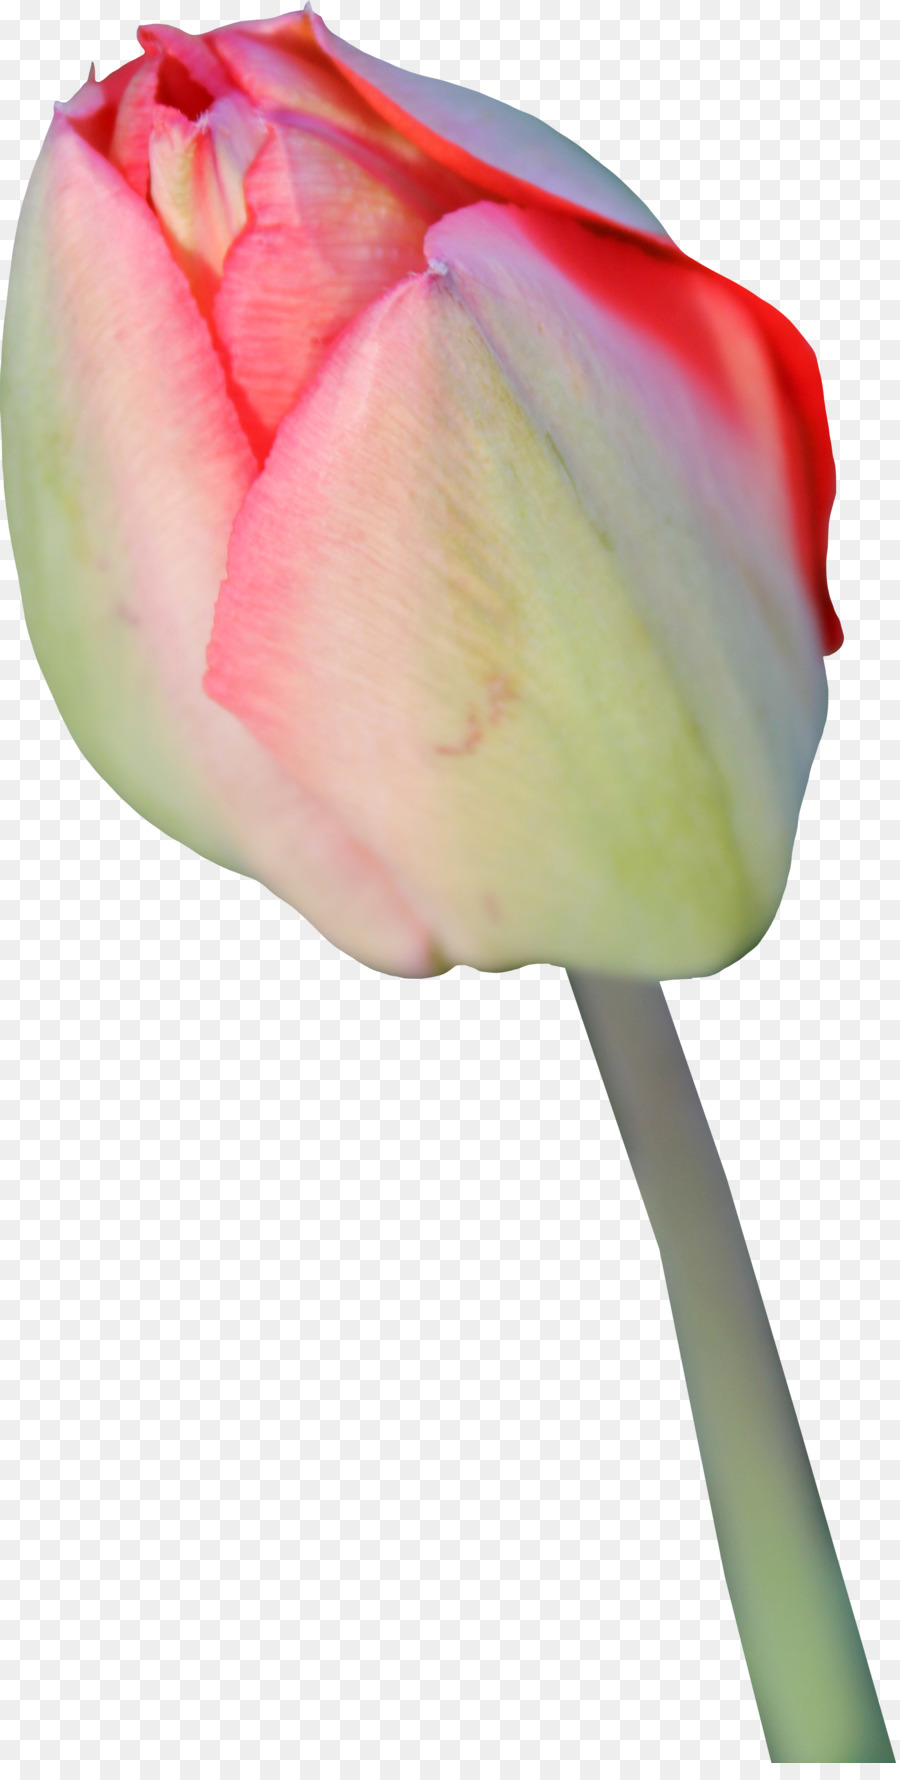 Tulip Flower Icon - Tulip Transparent Background png download - 900*1763 - Free Transparent Tulip png Download.